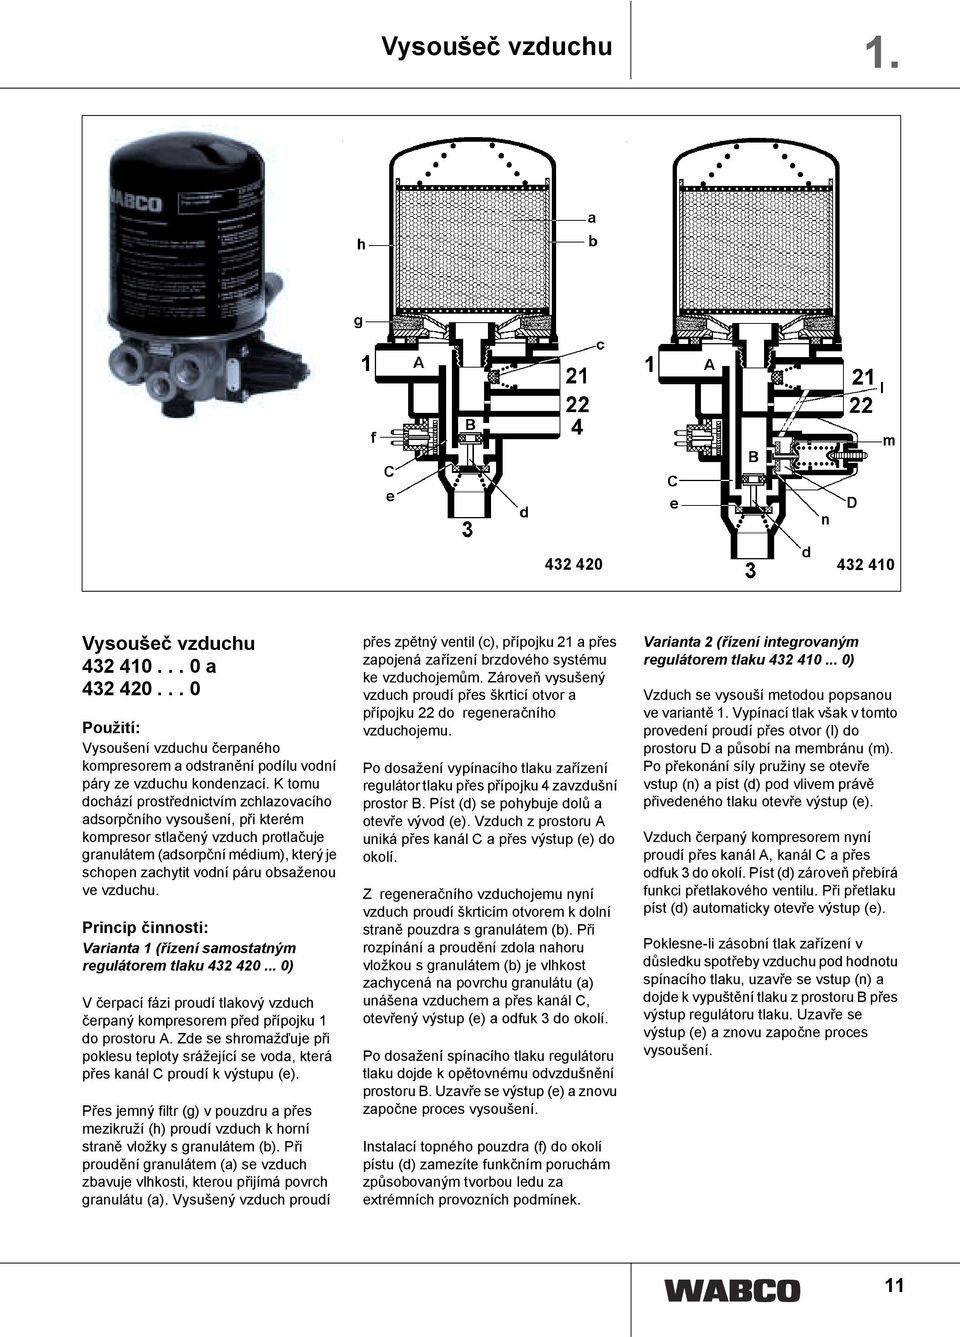 vzduchu. Varianta 1 (řízení samostatným regulátorem tlaku 432 420... 0) V čerpací fázi proudí tlakový vzduch čerpaný kompresorem před přípojku 1 do prostoru A.